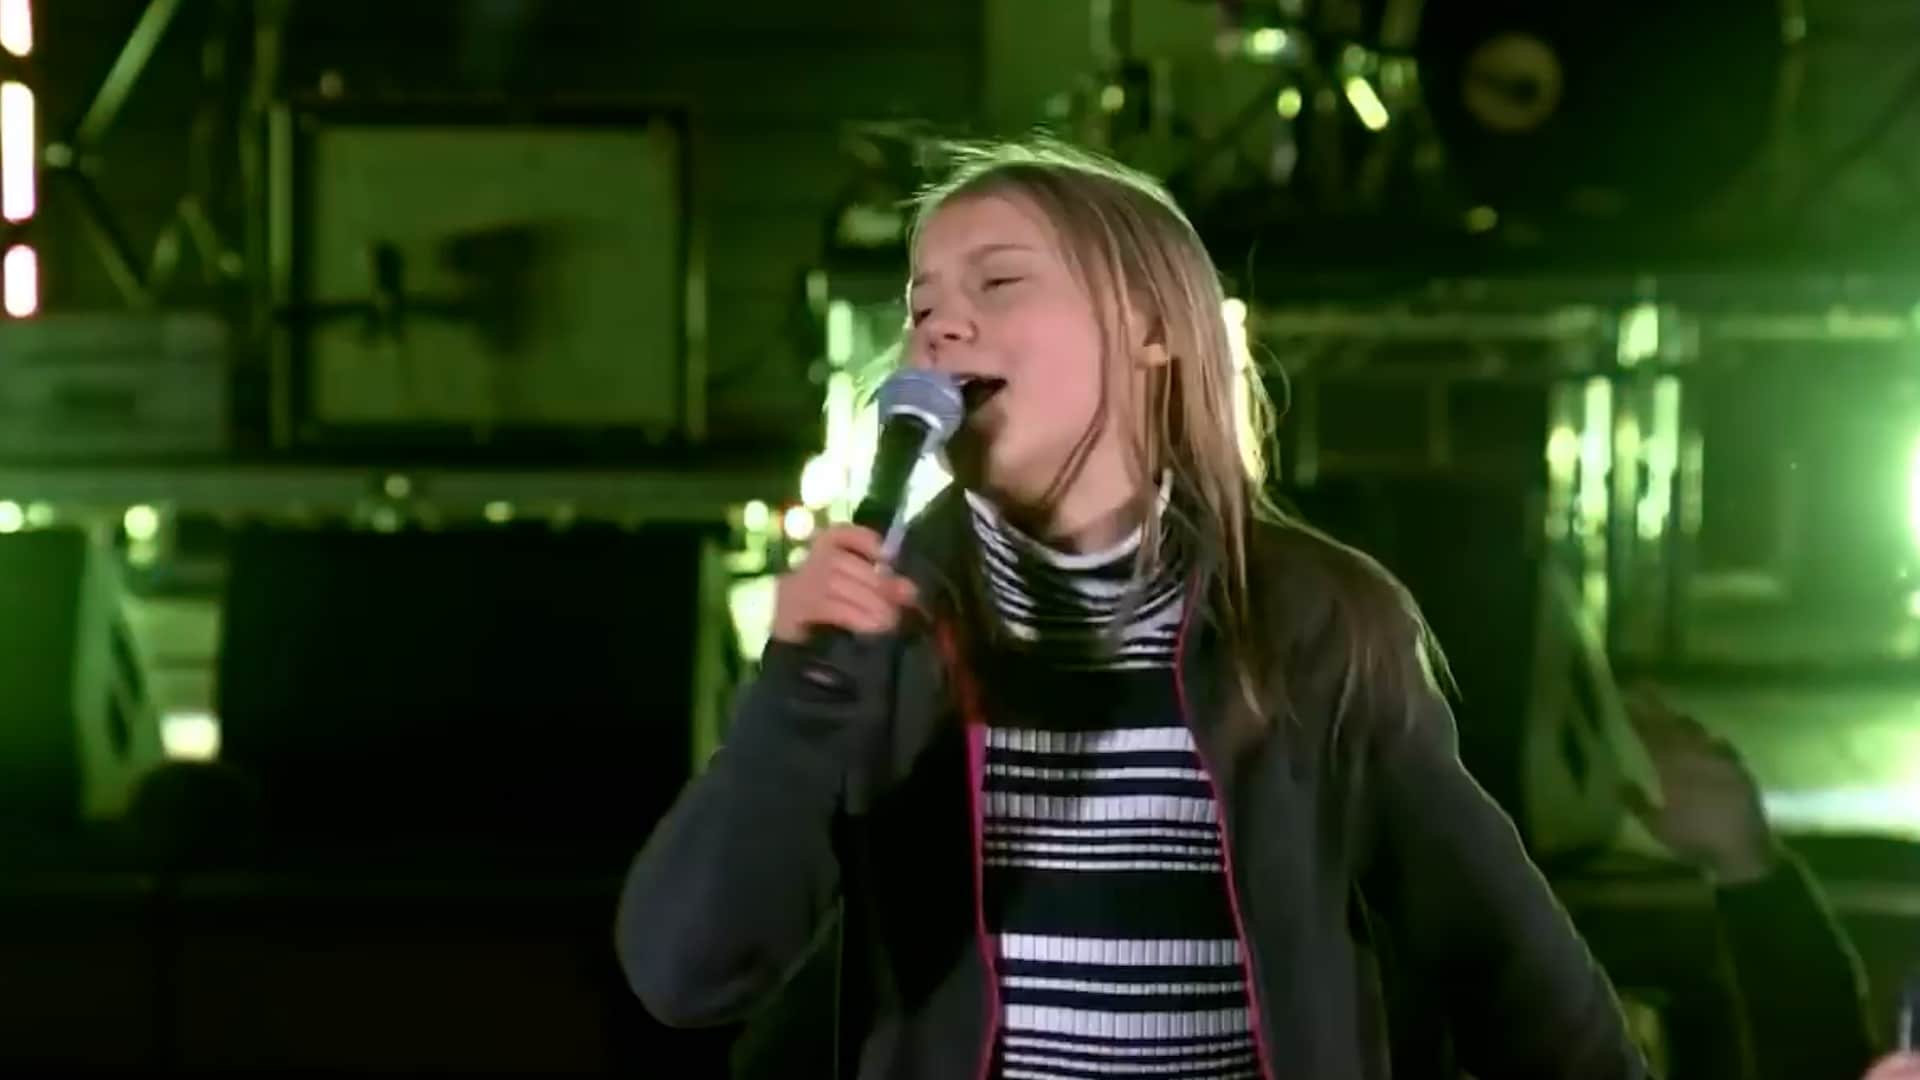 Video - Greta Thunberg zingt en danst op podium: ‘We zijn niet alleen boos’